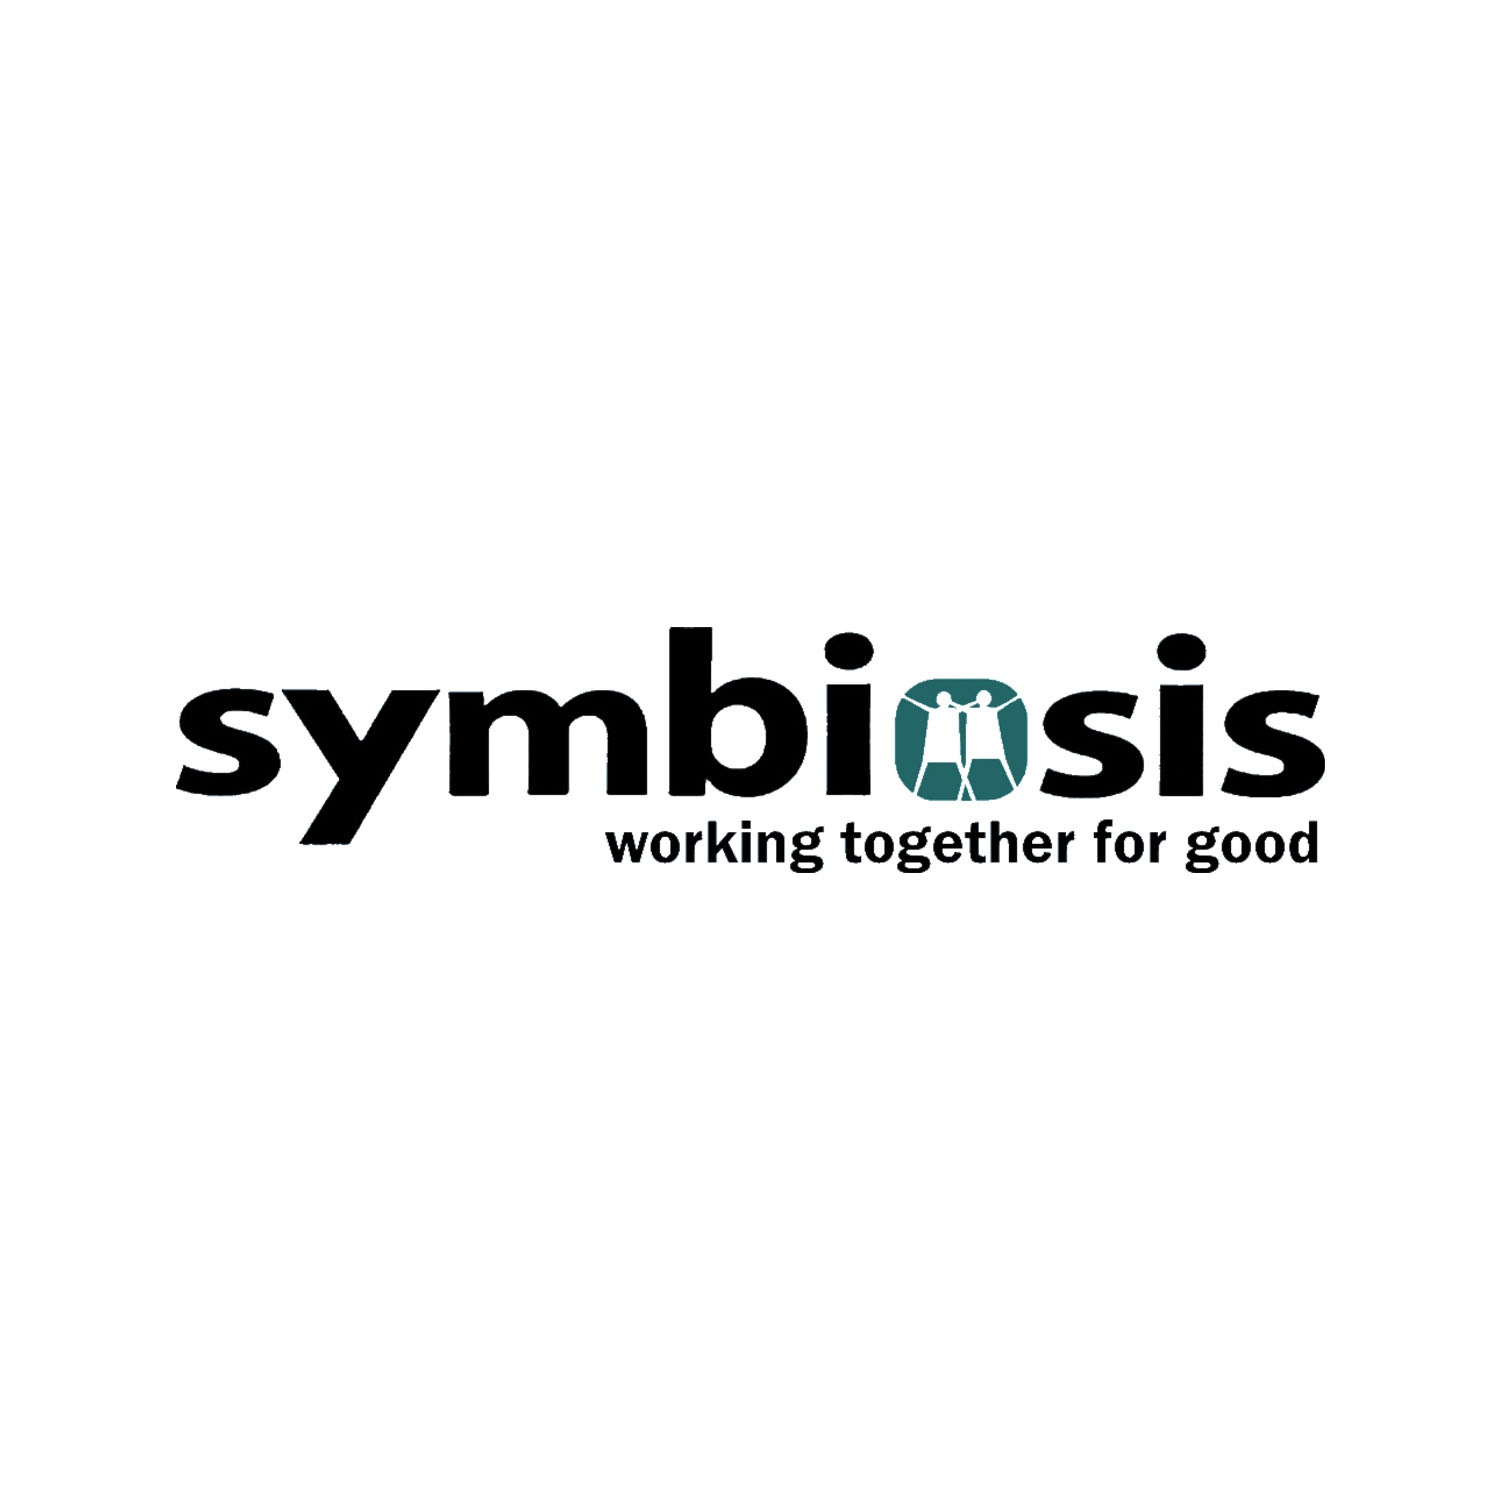 Symbiosis Mgi